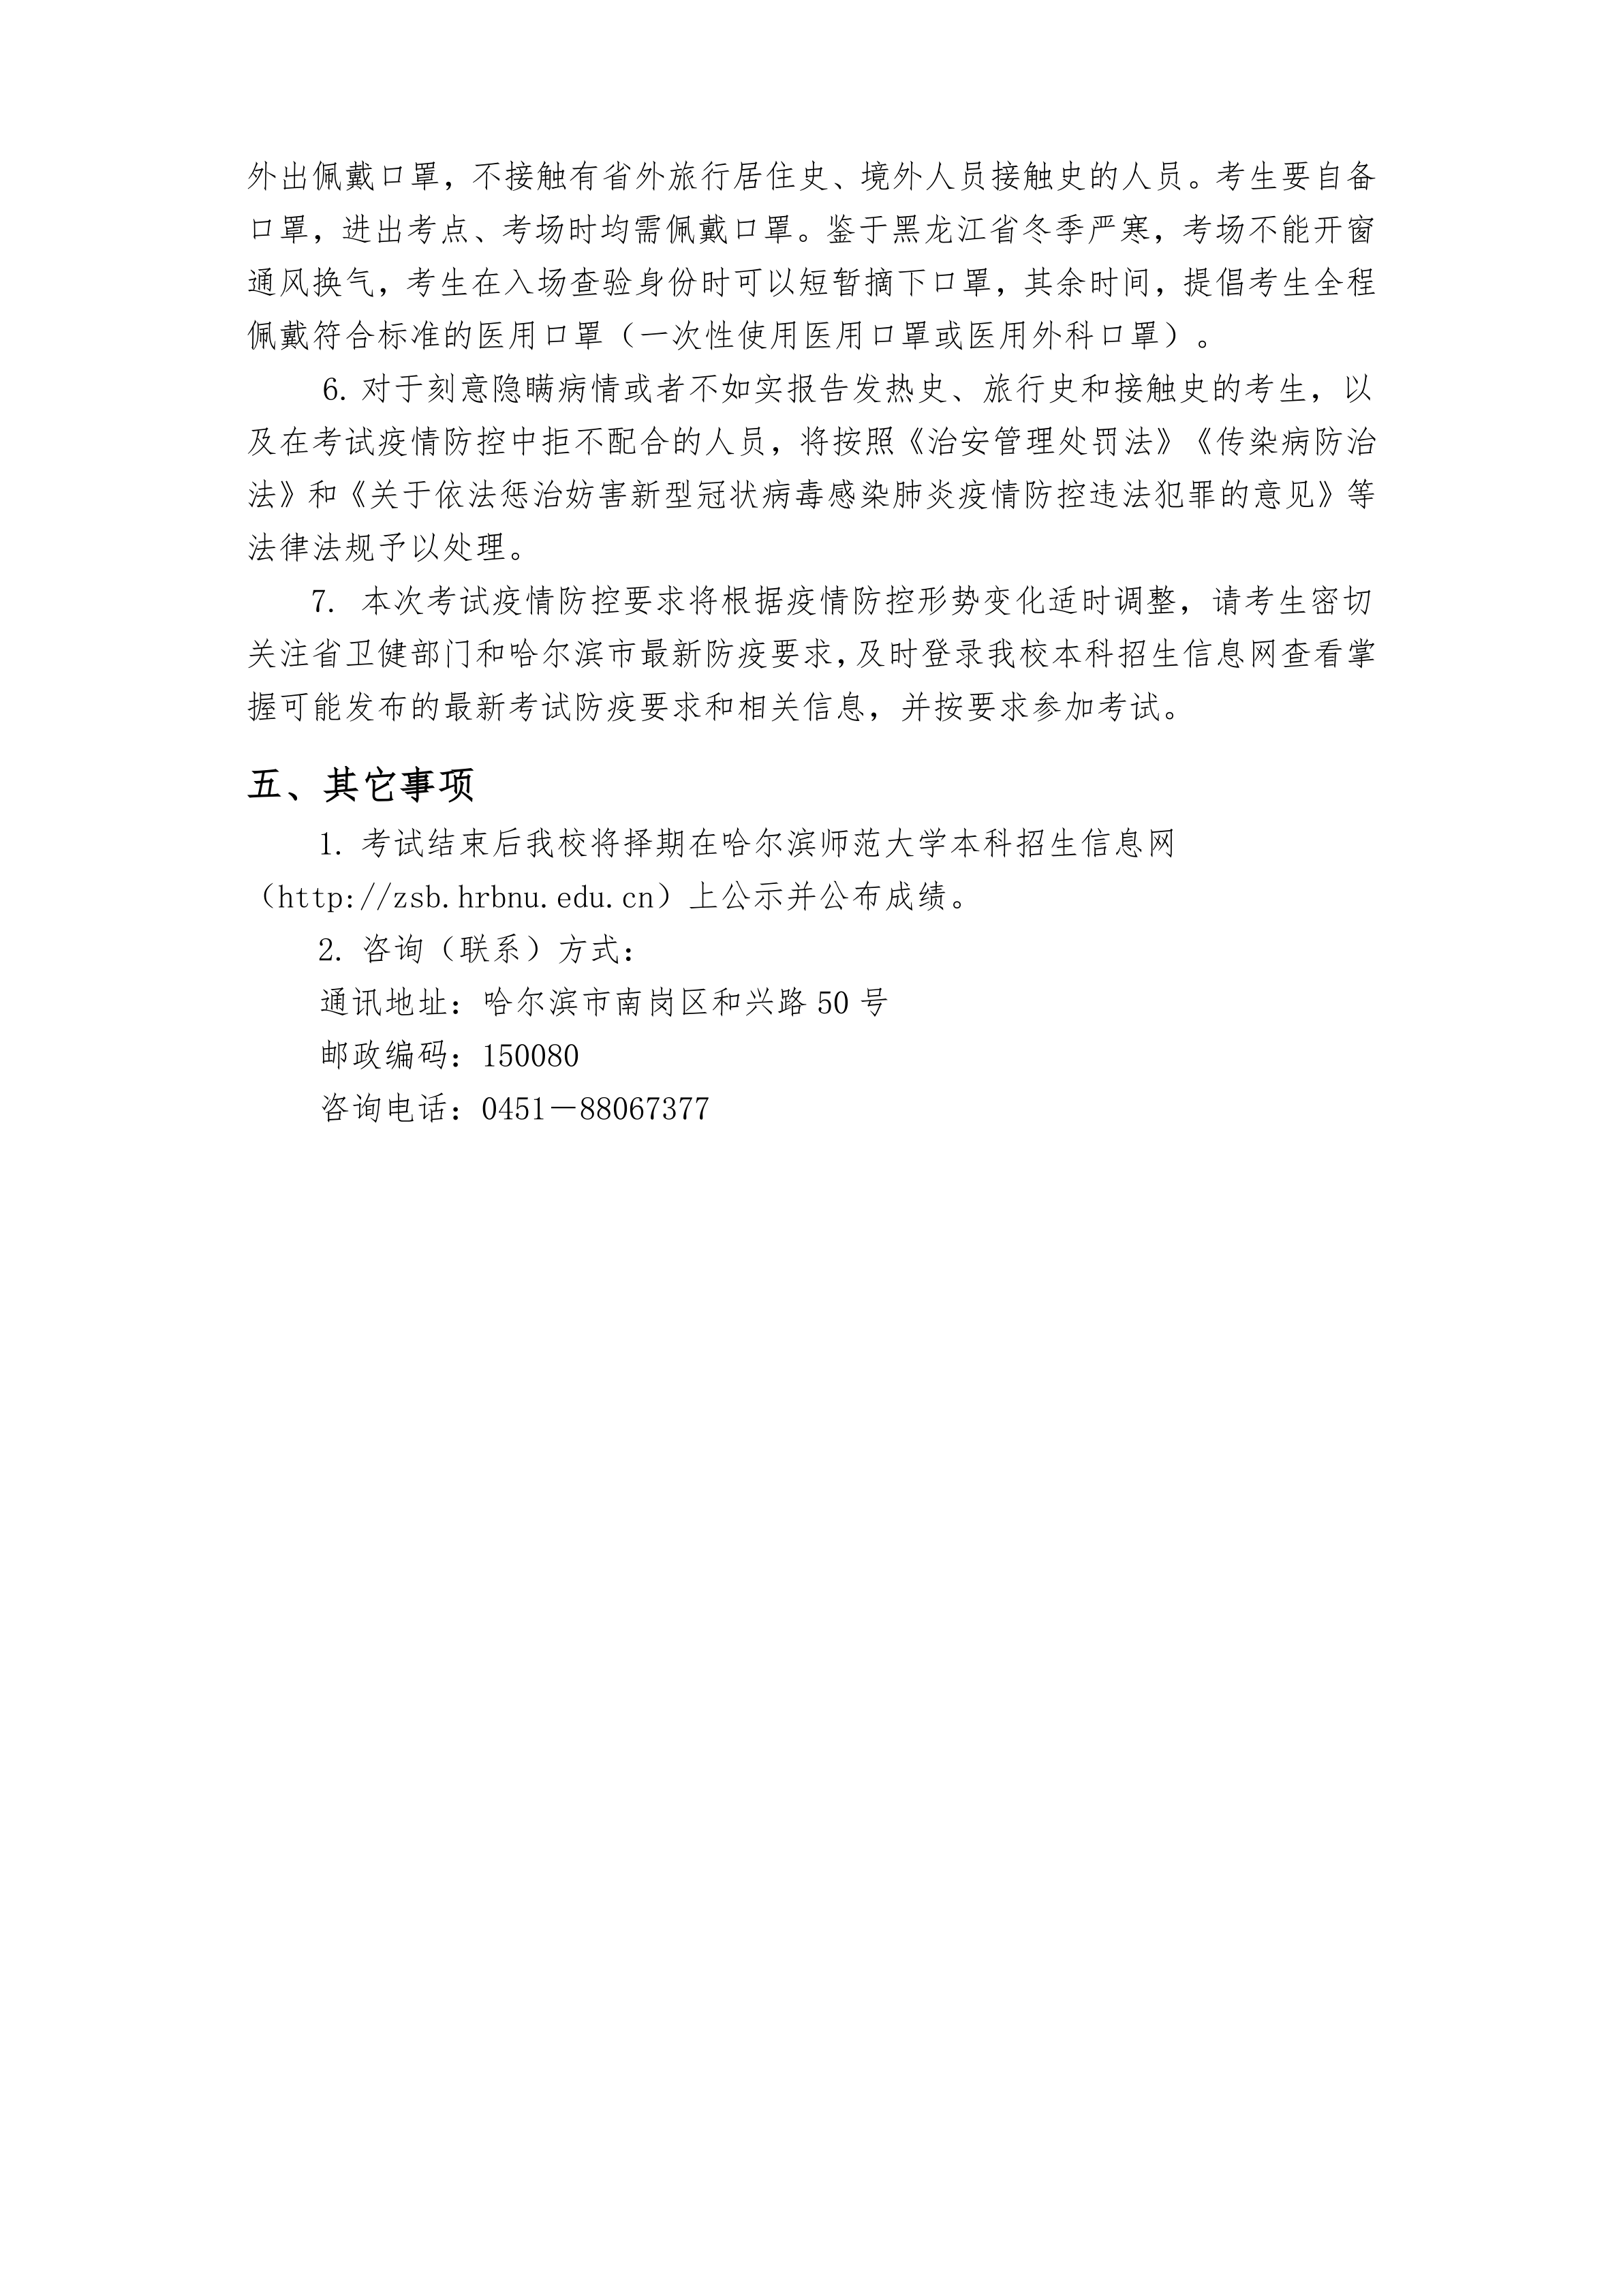 000-关于哈尔滨师范大学2021年在黑龙江省艺术类专业校考的通知_5.png